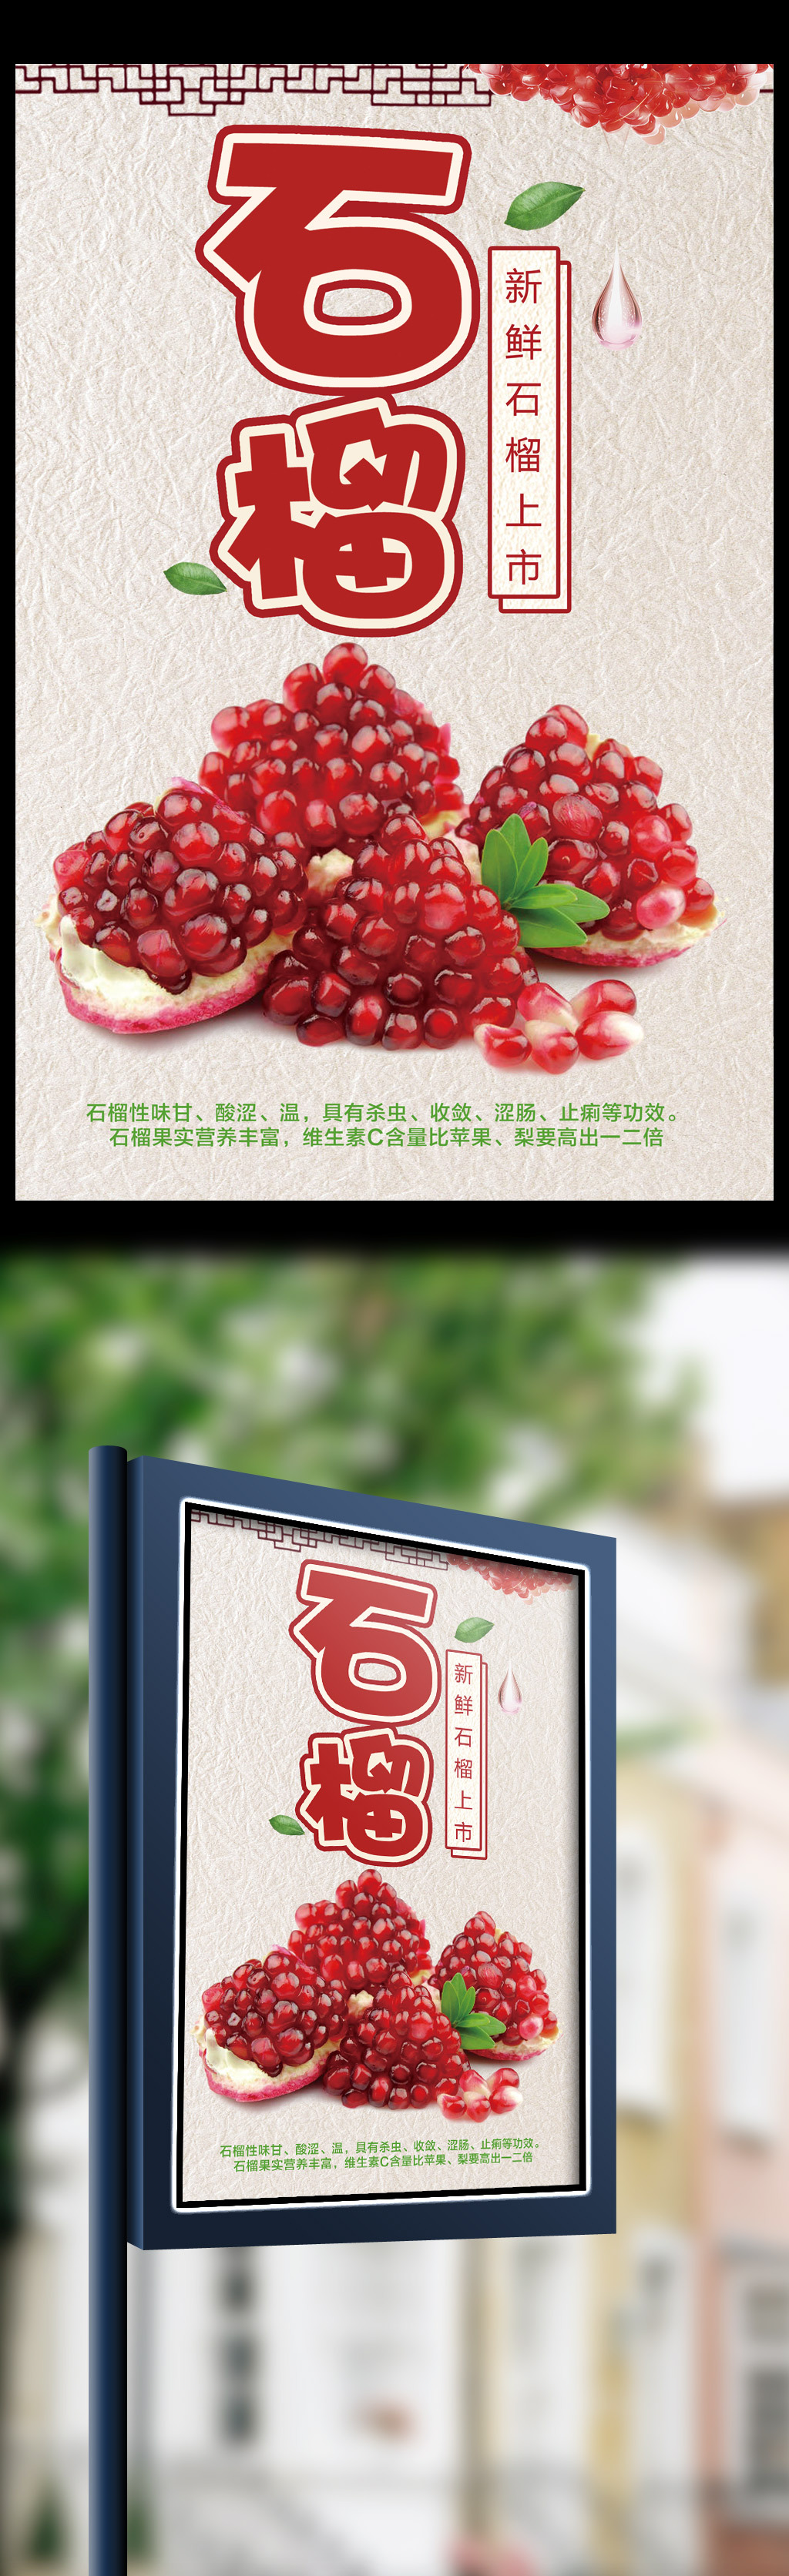 中国风水果店石榴海报素材图片